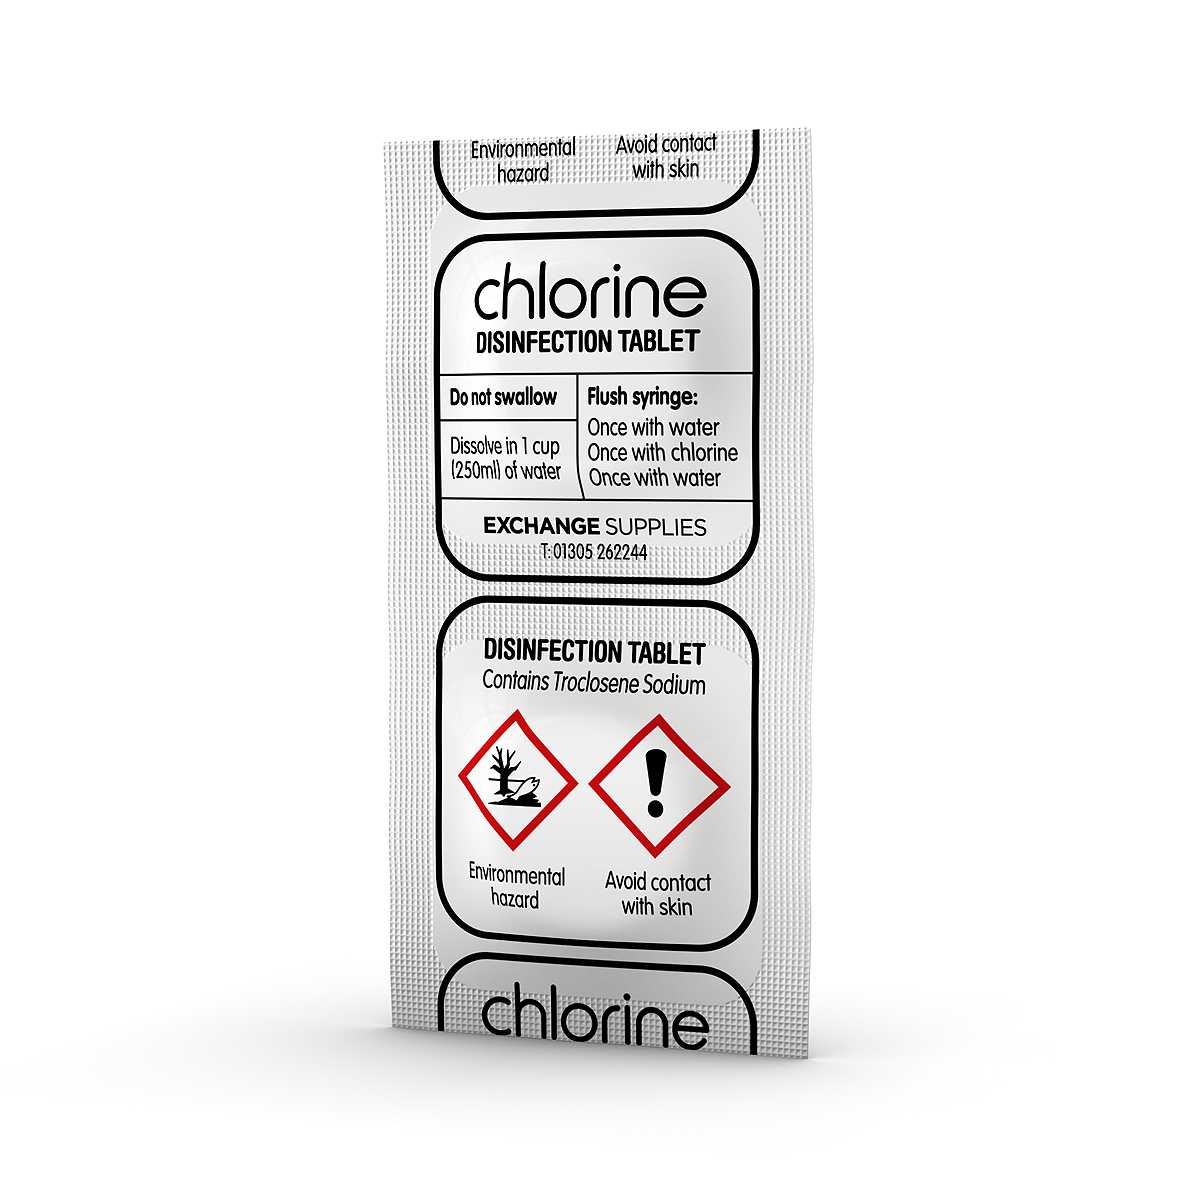 Chlorine syringe disinfectant tablets